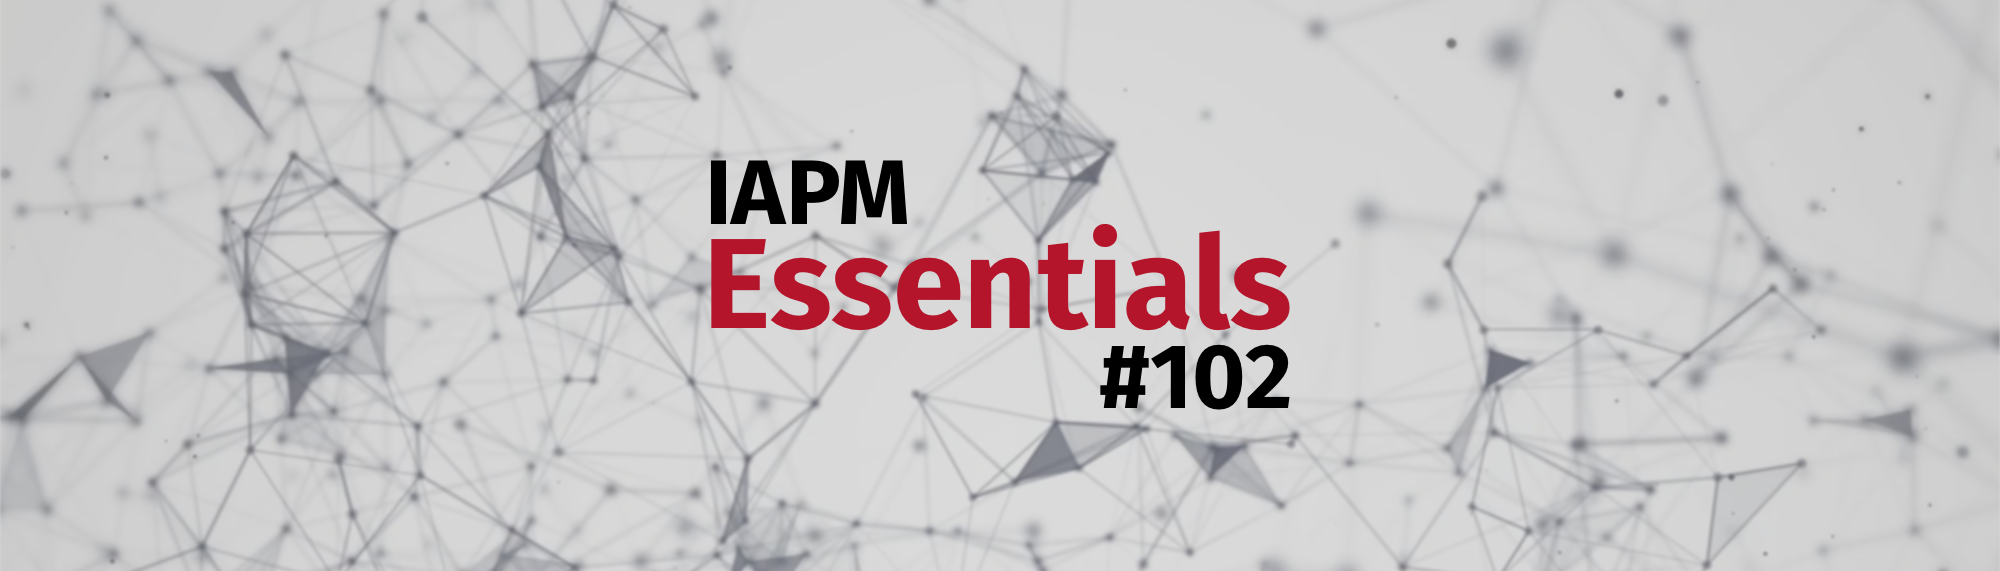 IAPM Essentials #102 - PM news | IAPM